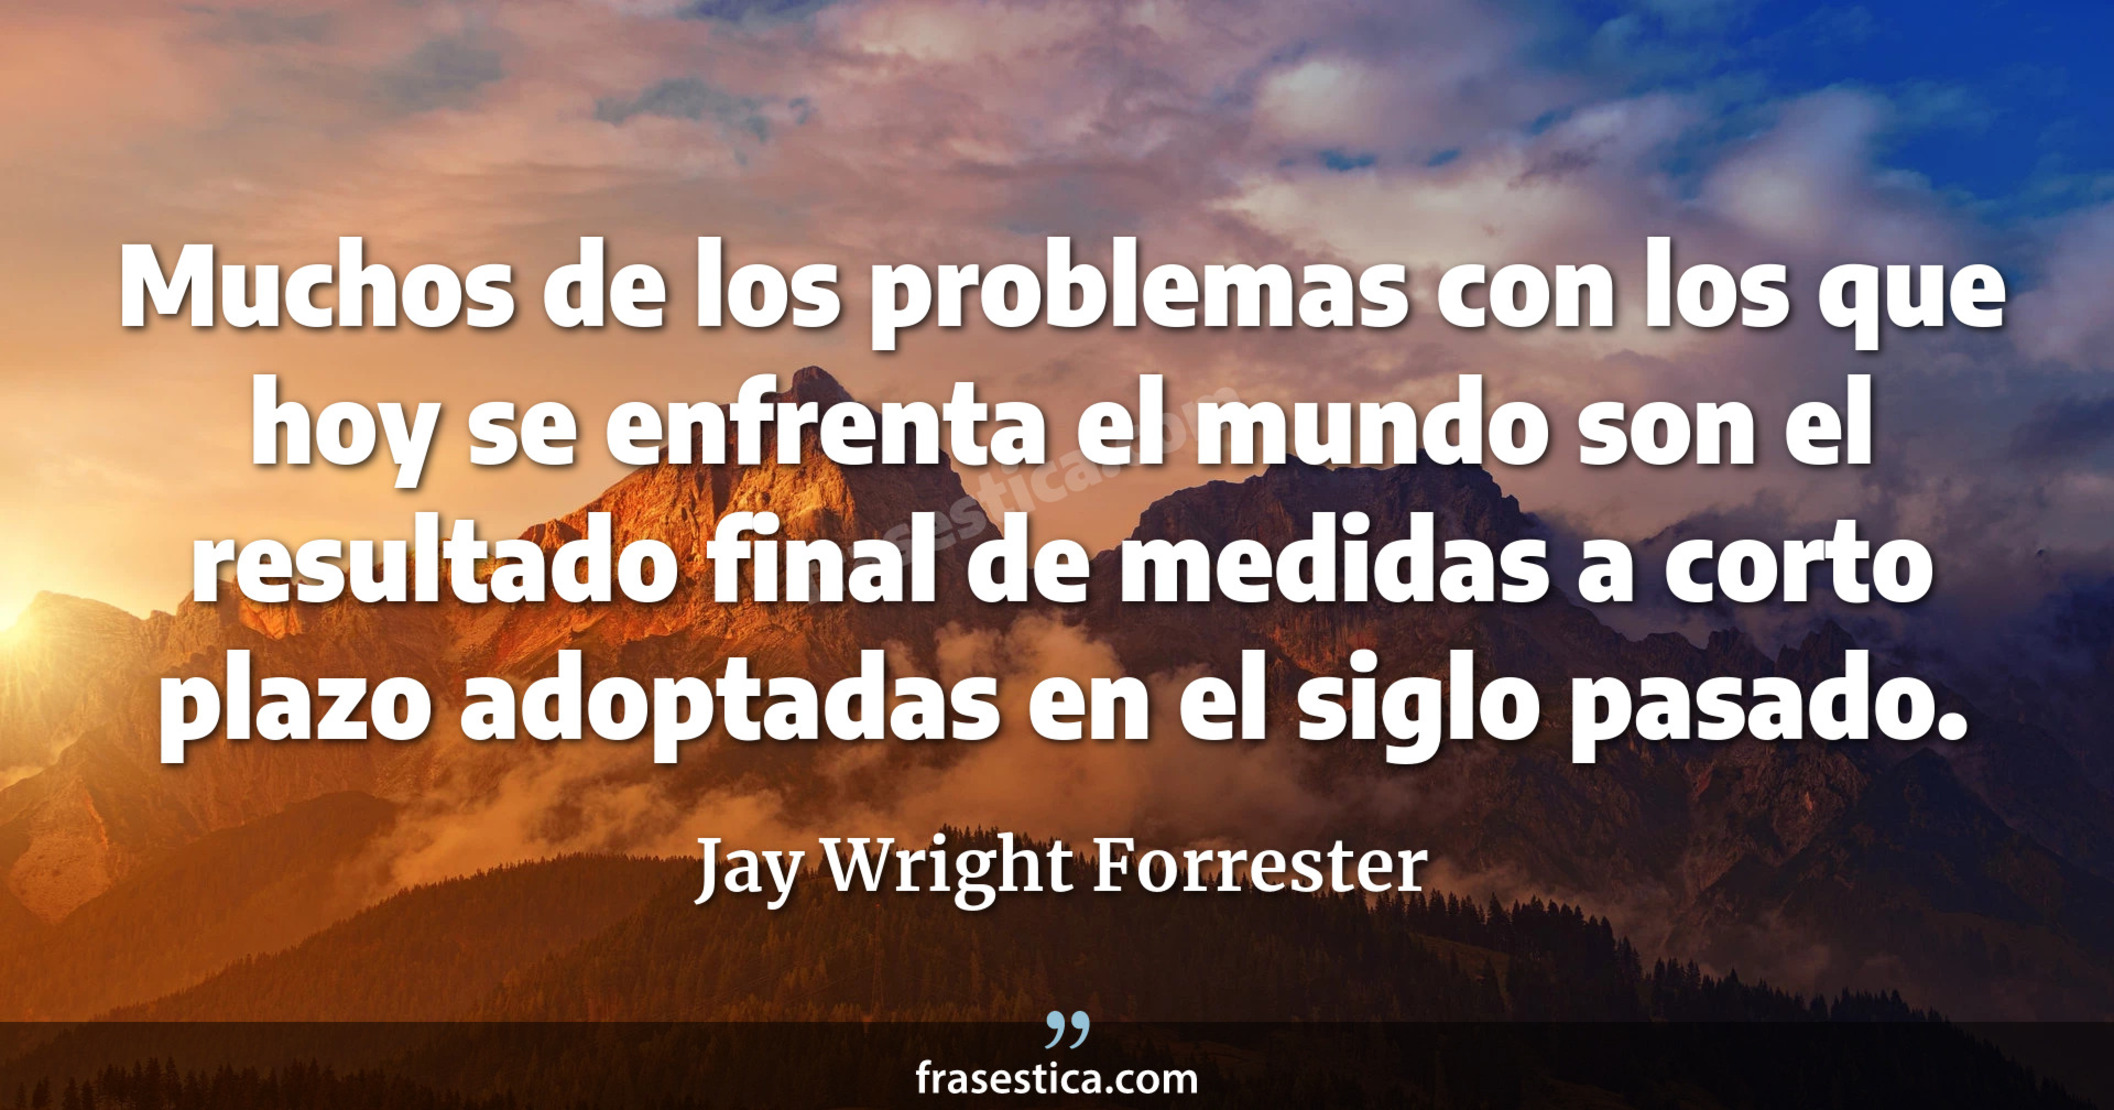 Muchos de los problemas con los que hoy se enfrenta el mundo son el resultado final de medidas a corto plazo adoptadas en el siglo pasado. - Jay Wright Forrester